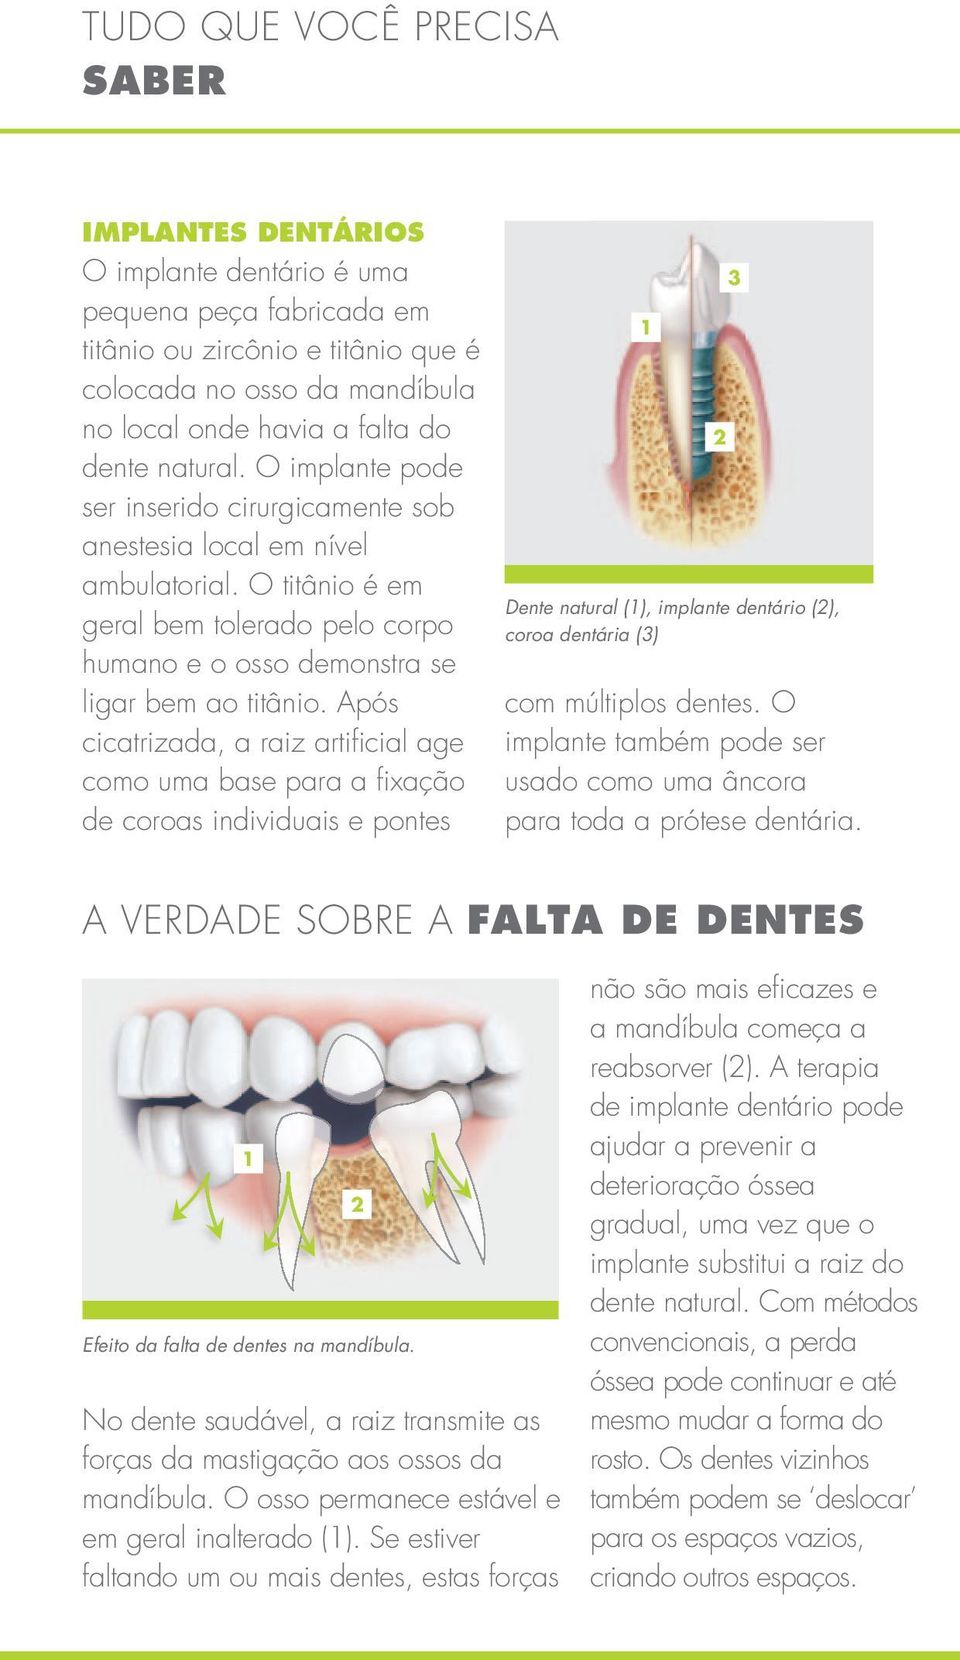 Após cicatrizada, a raiz artificial age como uma base para a fixação de coroas individuais e pontes 1 Dente natural (1), implante dentário (2), coroa dentária (3) com múltiplos dentes.